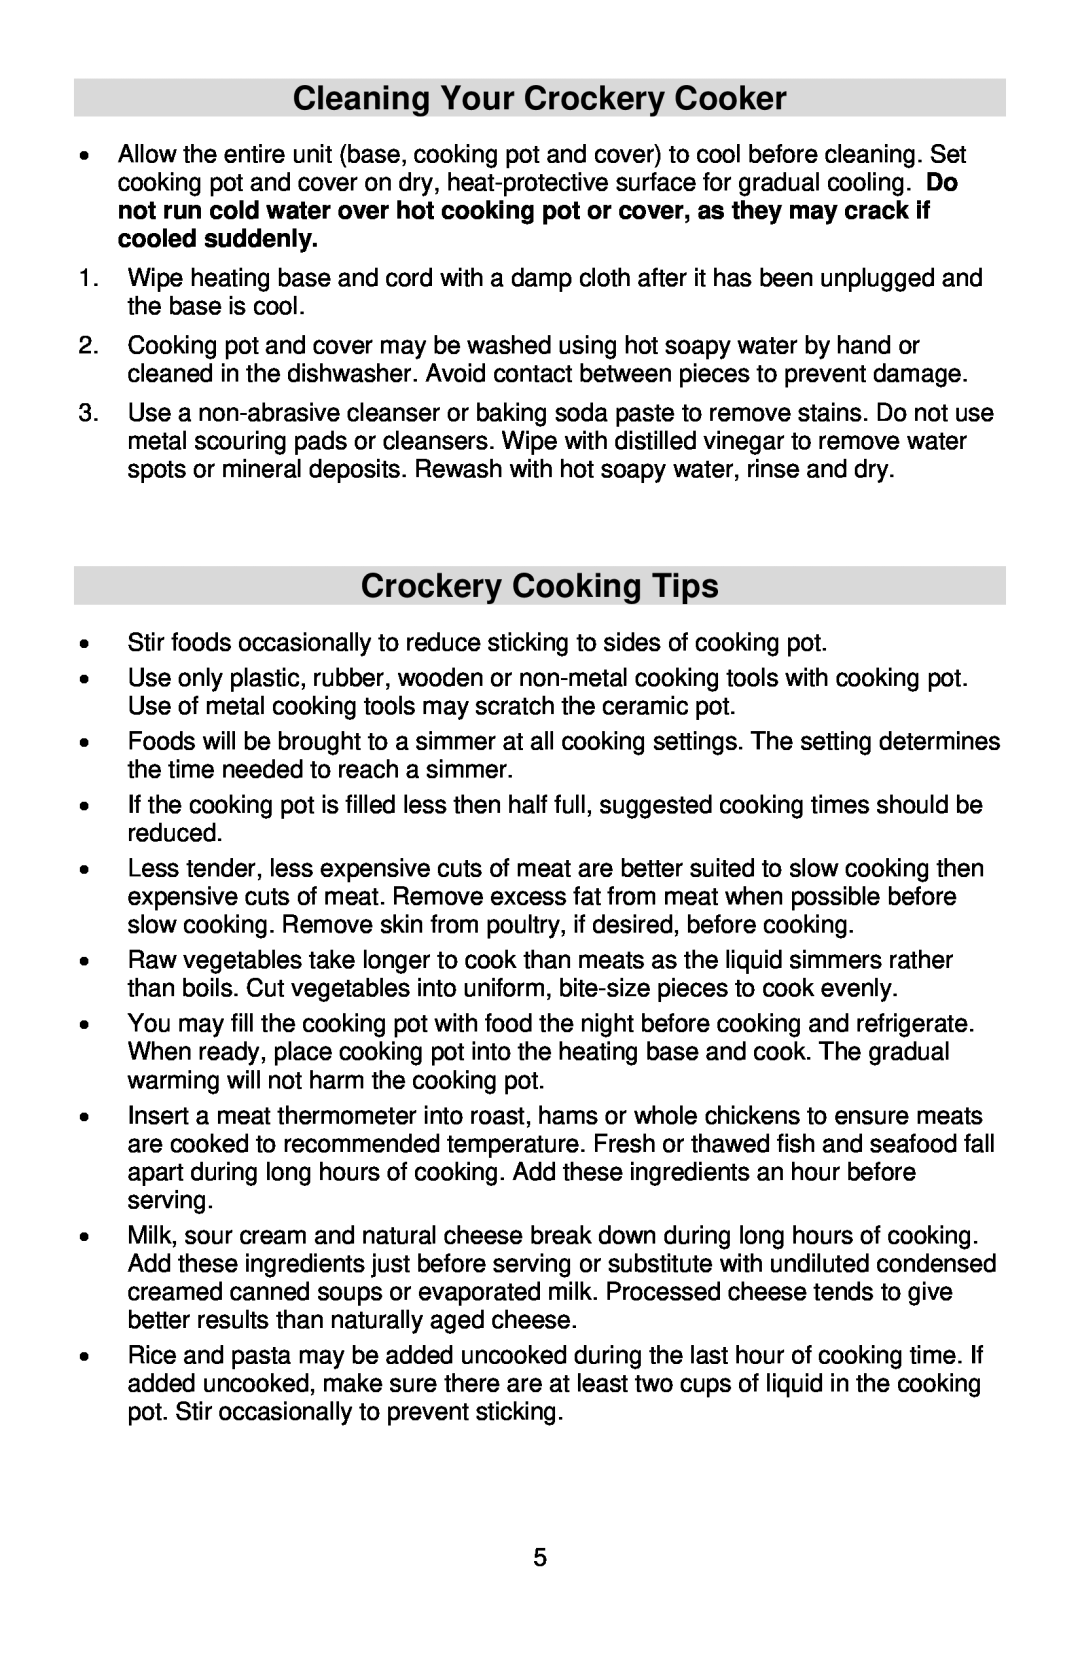 West Bend 5 6 Quart CrockeryTM Cooker instruction manual Cleaning Your Crockery Cooker, Crockery Cooking Tips 